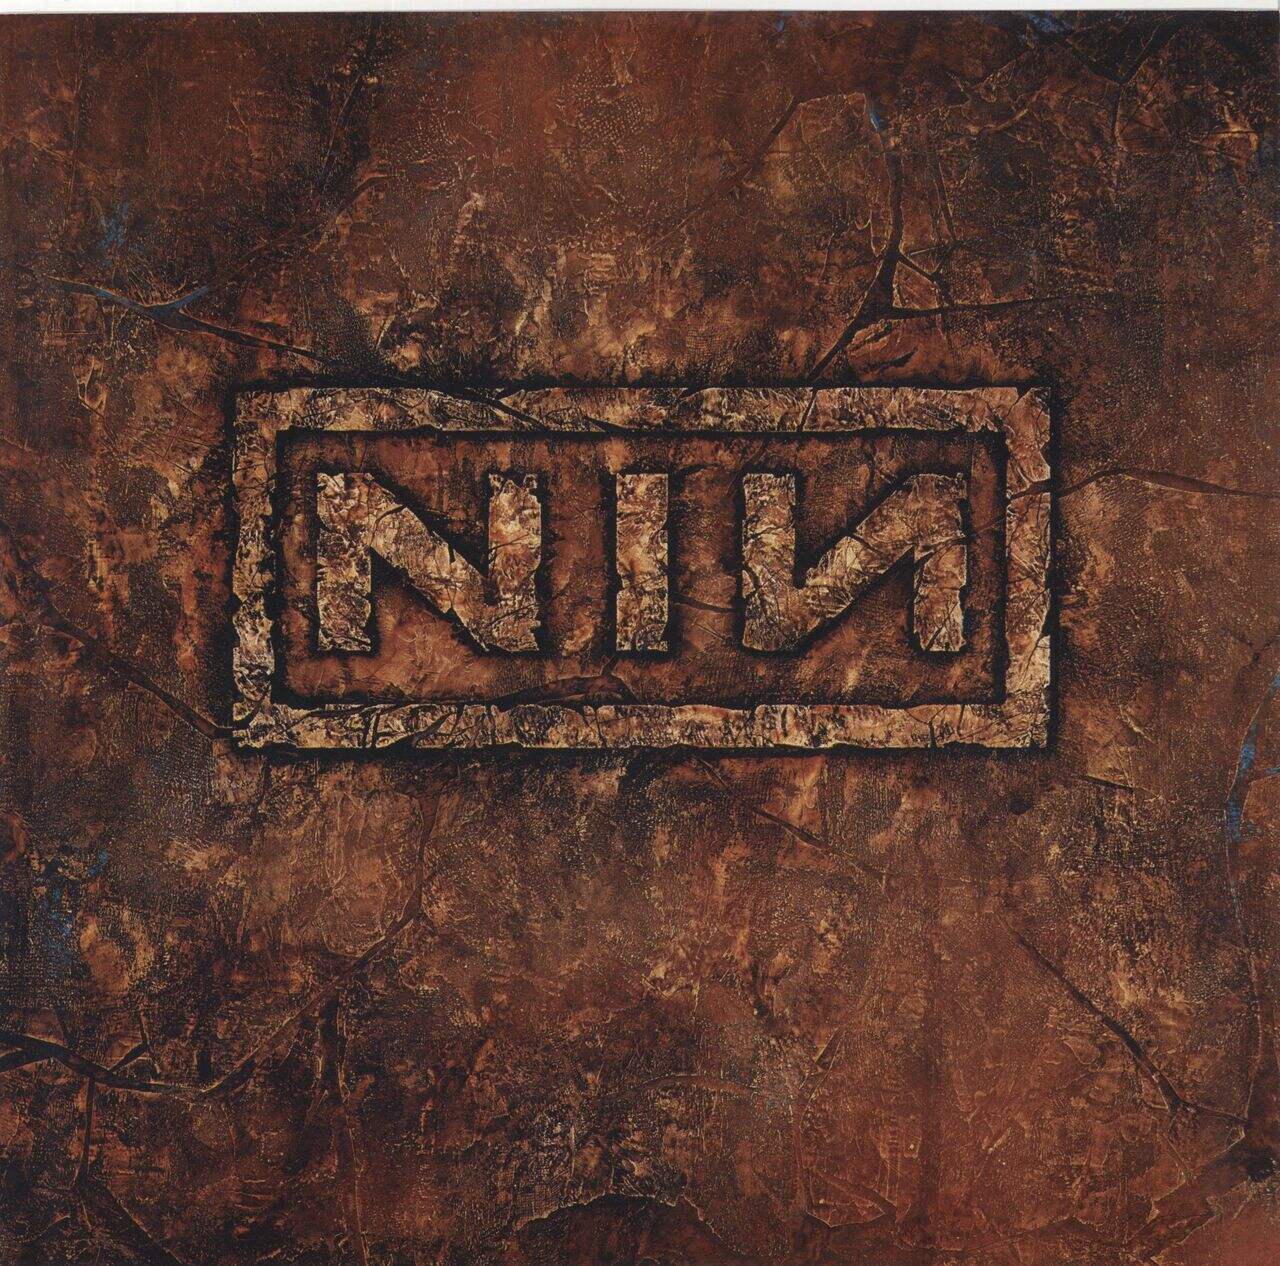 Nine Inch Nails The Downward Spiral - 180g US 2-LP vinyl set